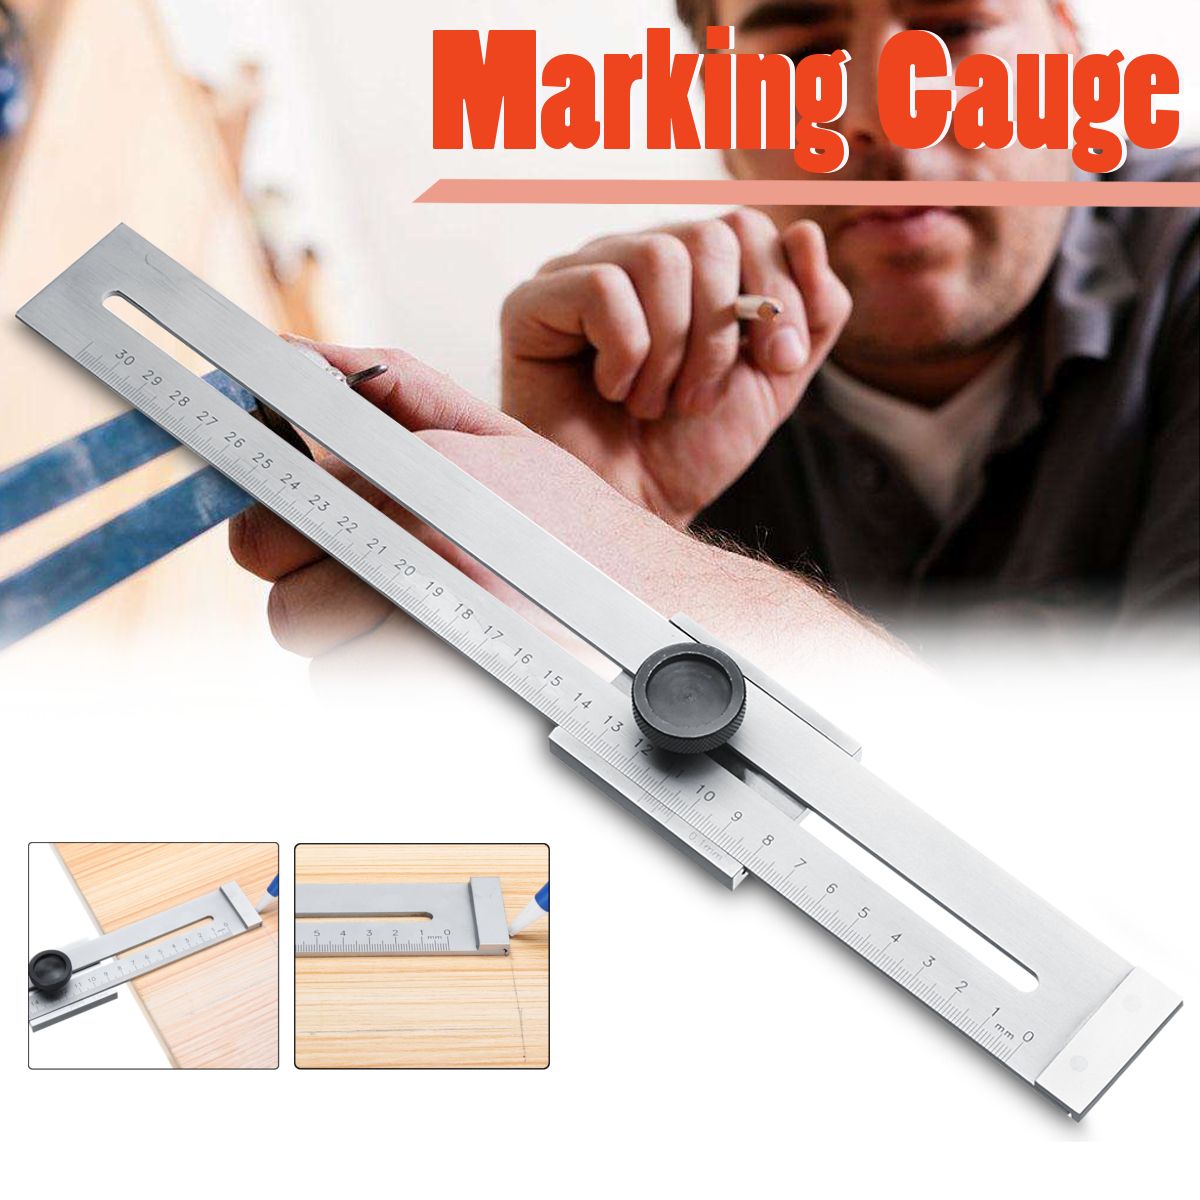 Carbon-Steel-01mm-Precision-Parallel-Ruler-Marker-Marking-Gauge-Line-Ruler-300mm-1331620